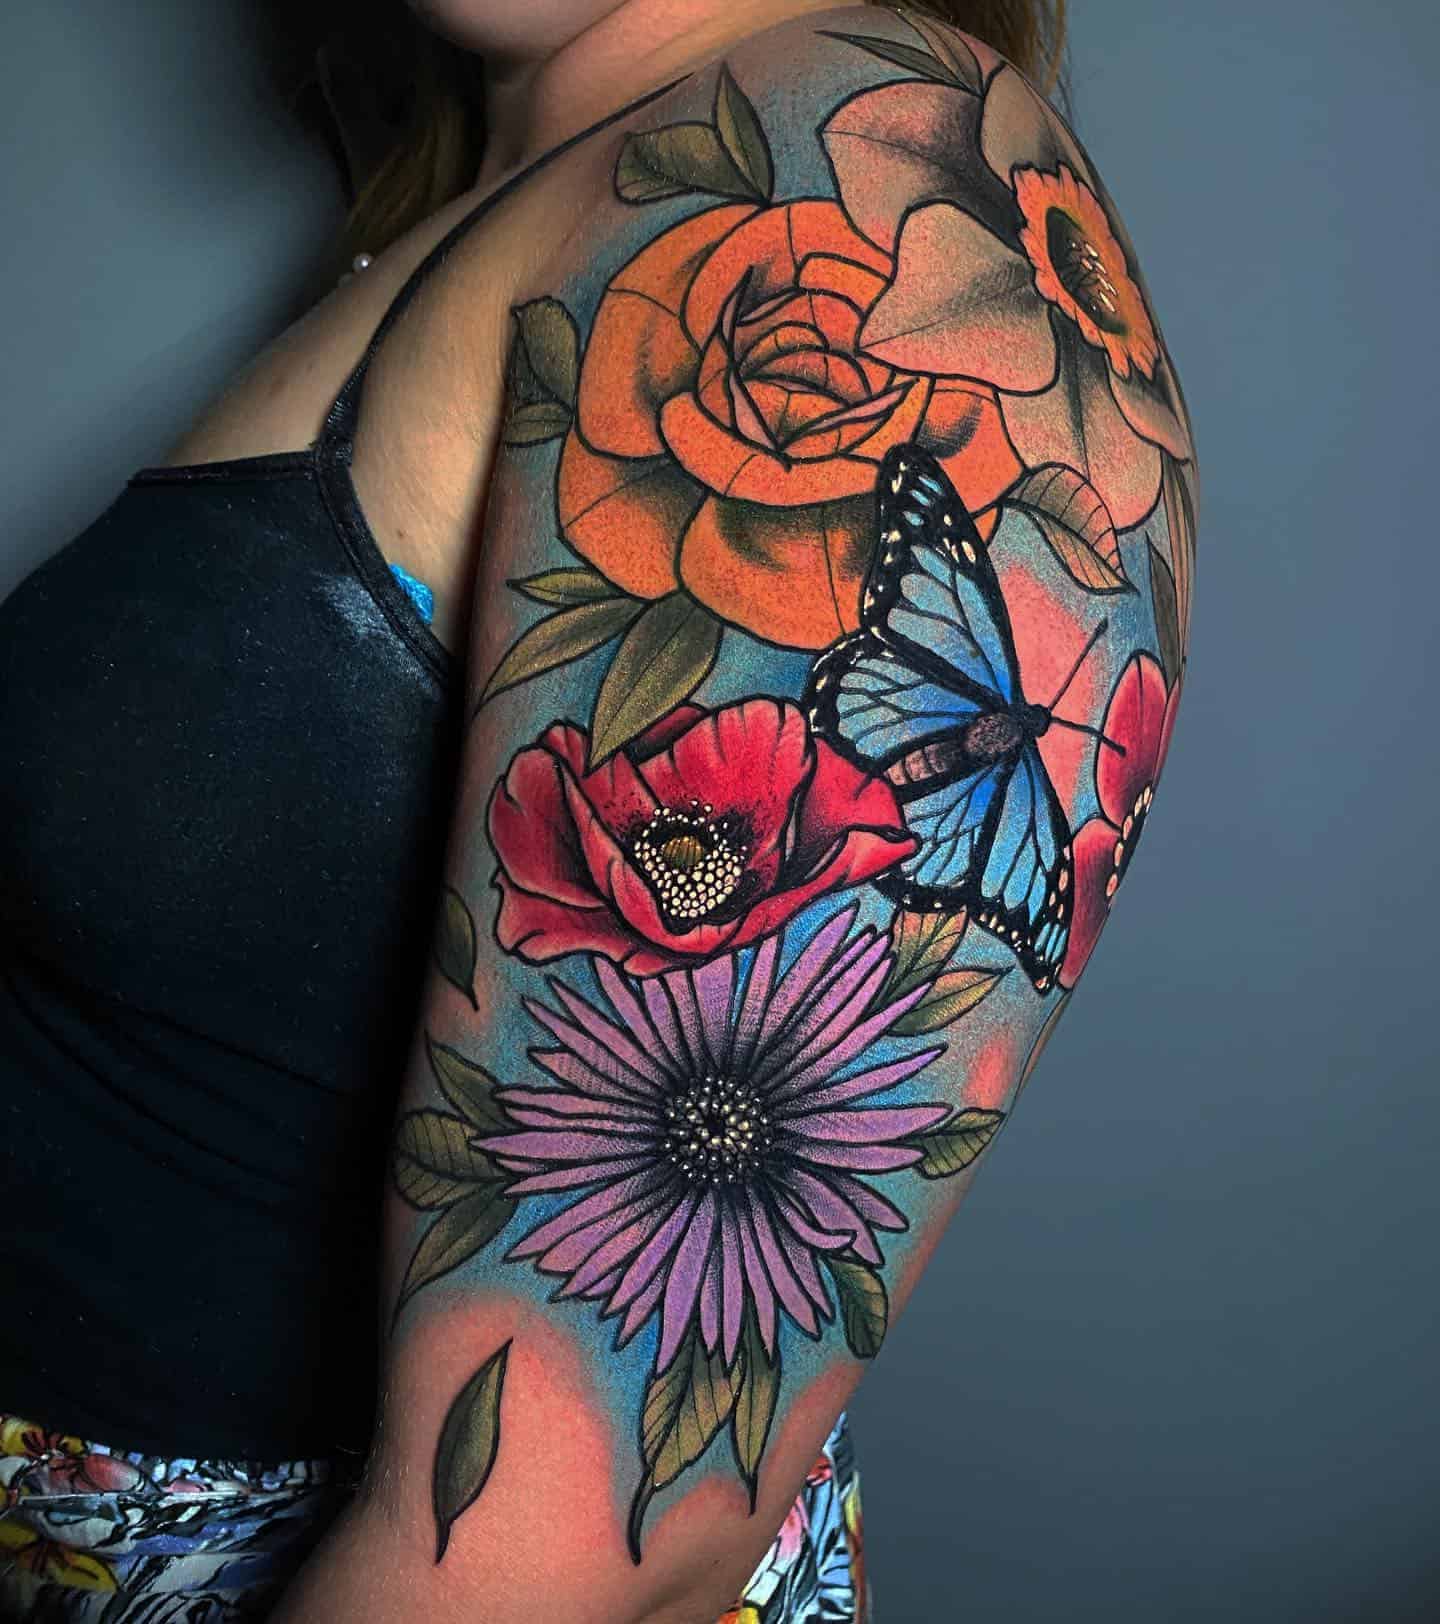 Floral sleeve tattoo 2